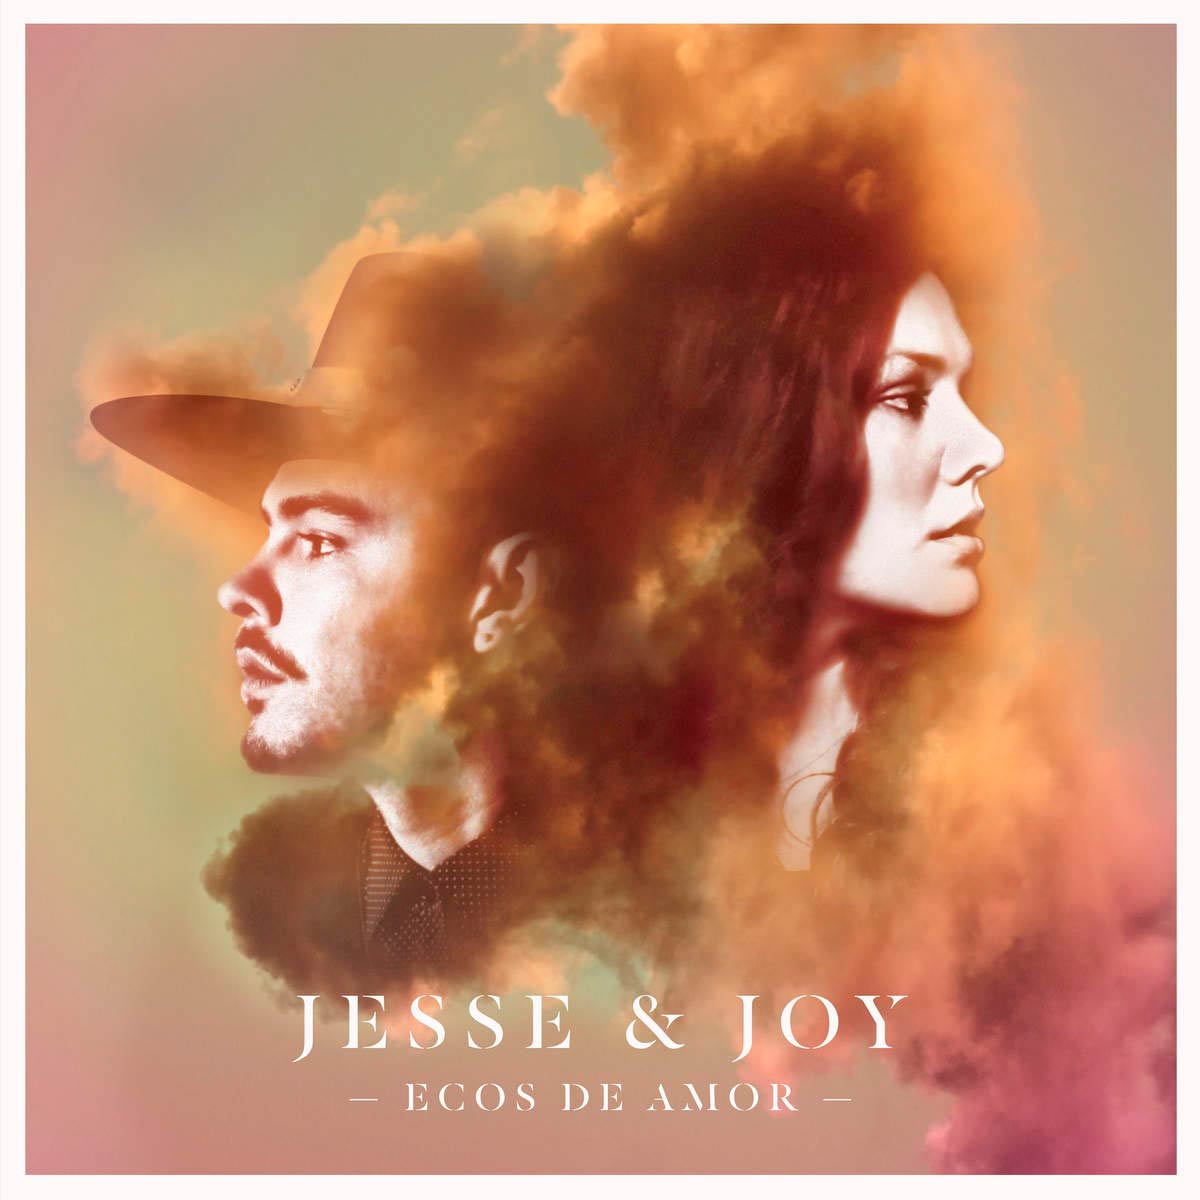 Jesse & Joy: Ecos de amor, la portada de la canción